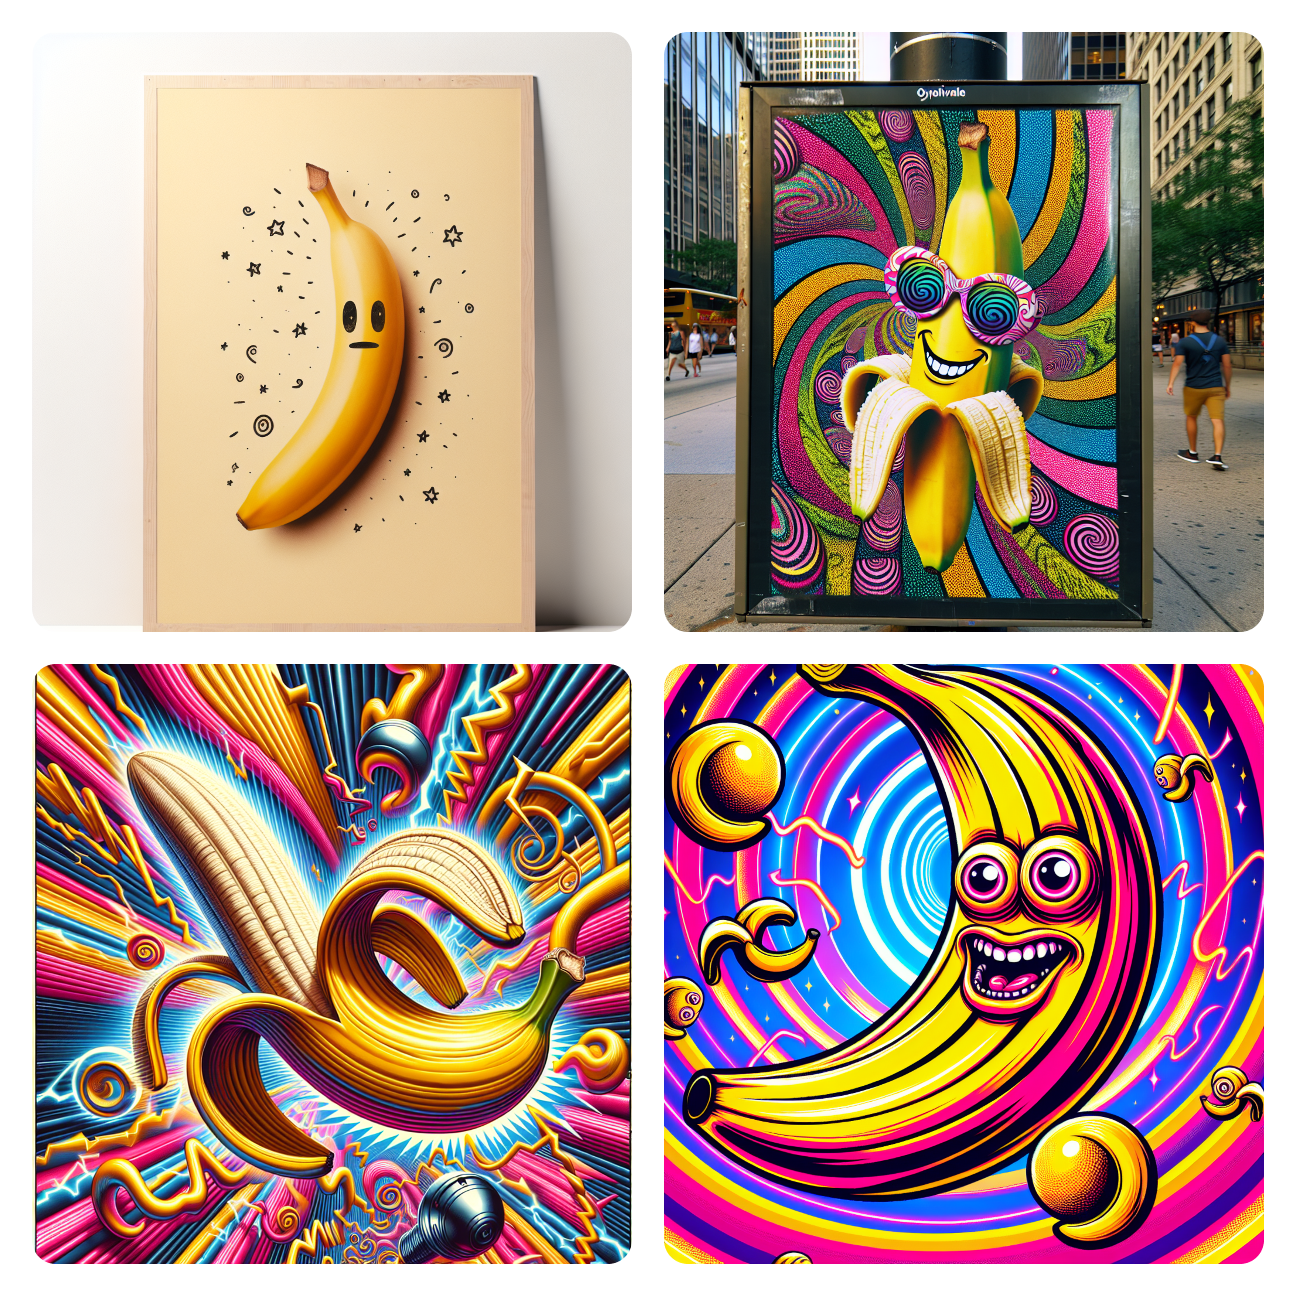 Image: Slippin' into Madness: The Banana Bonanza